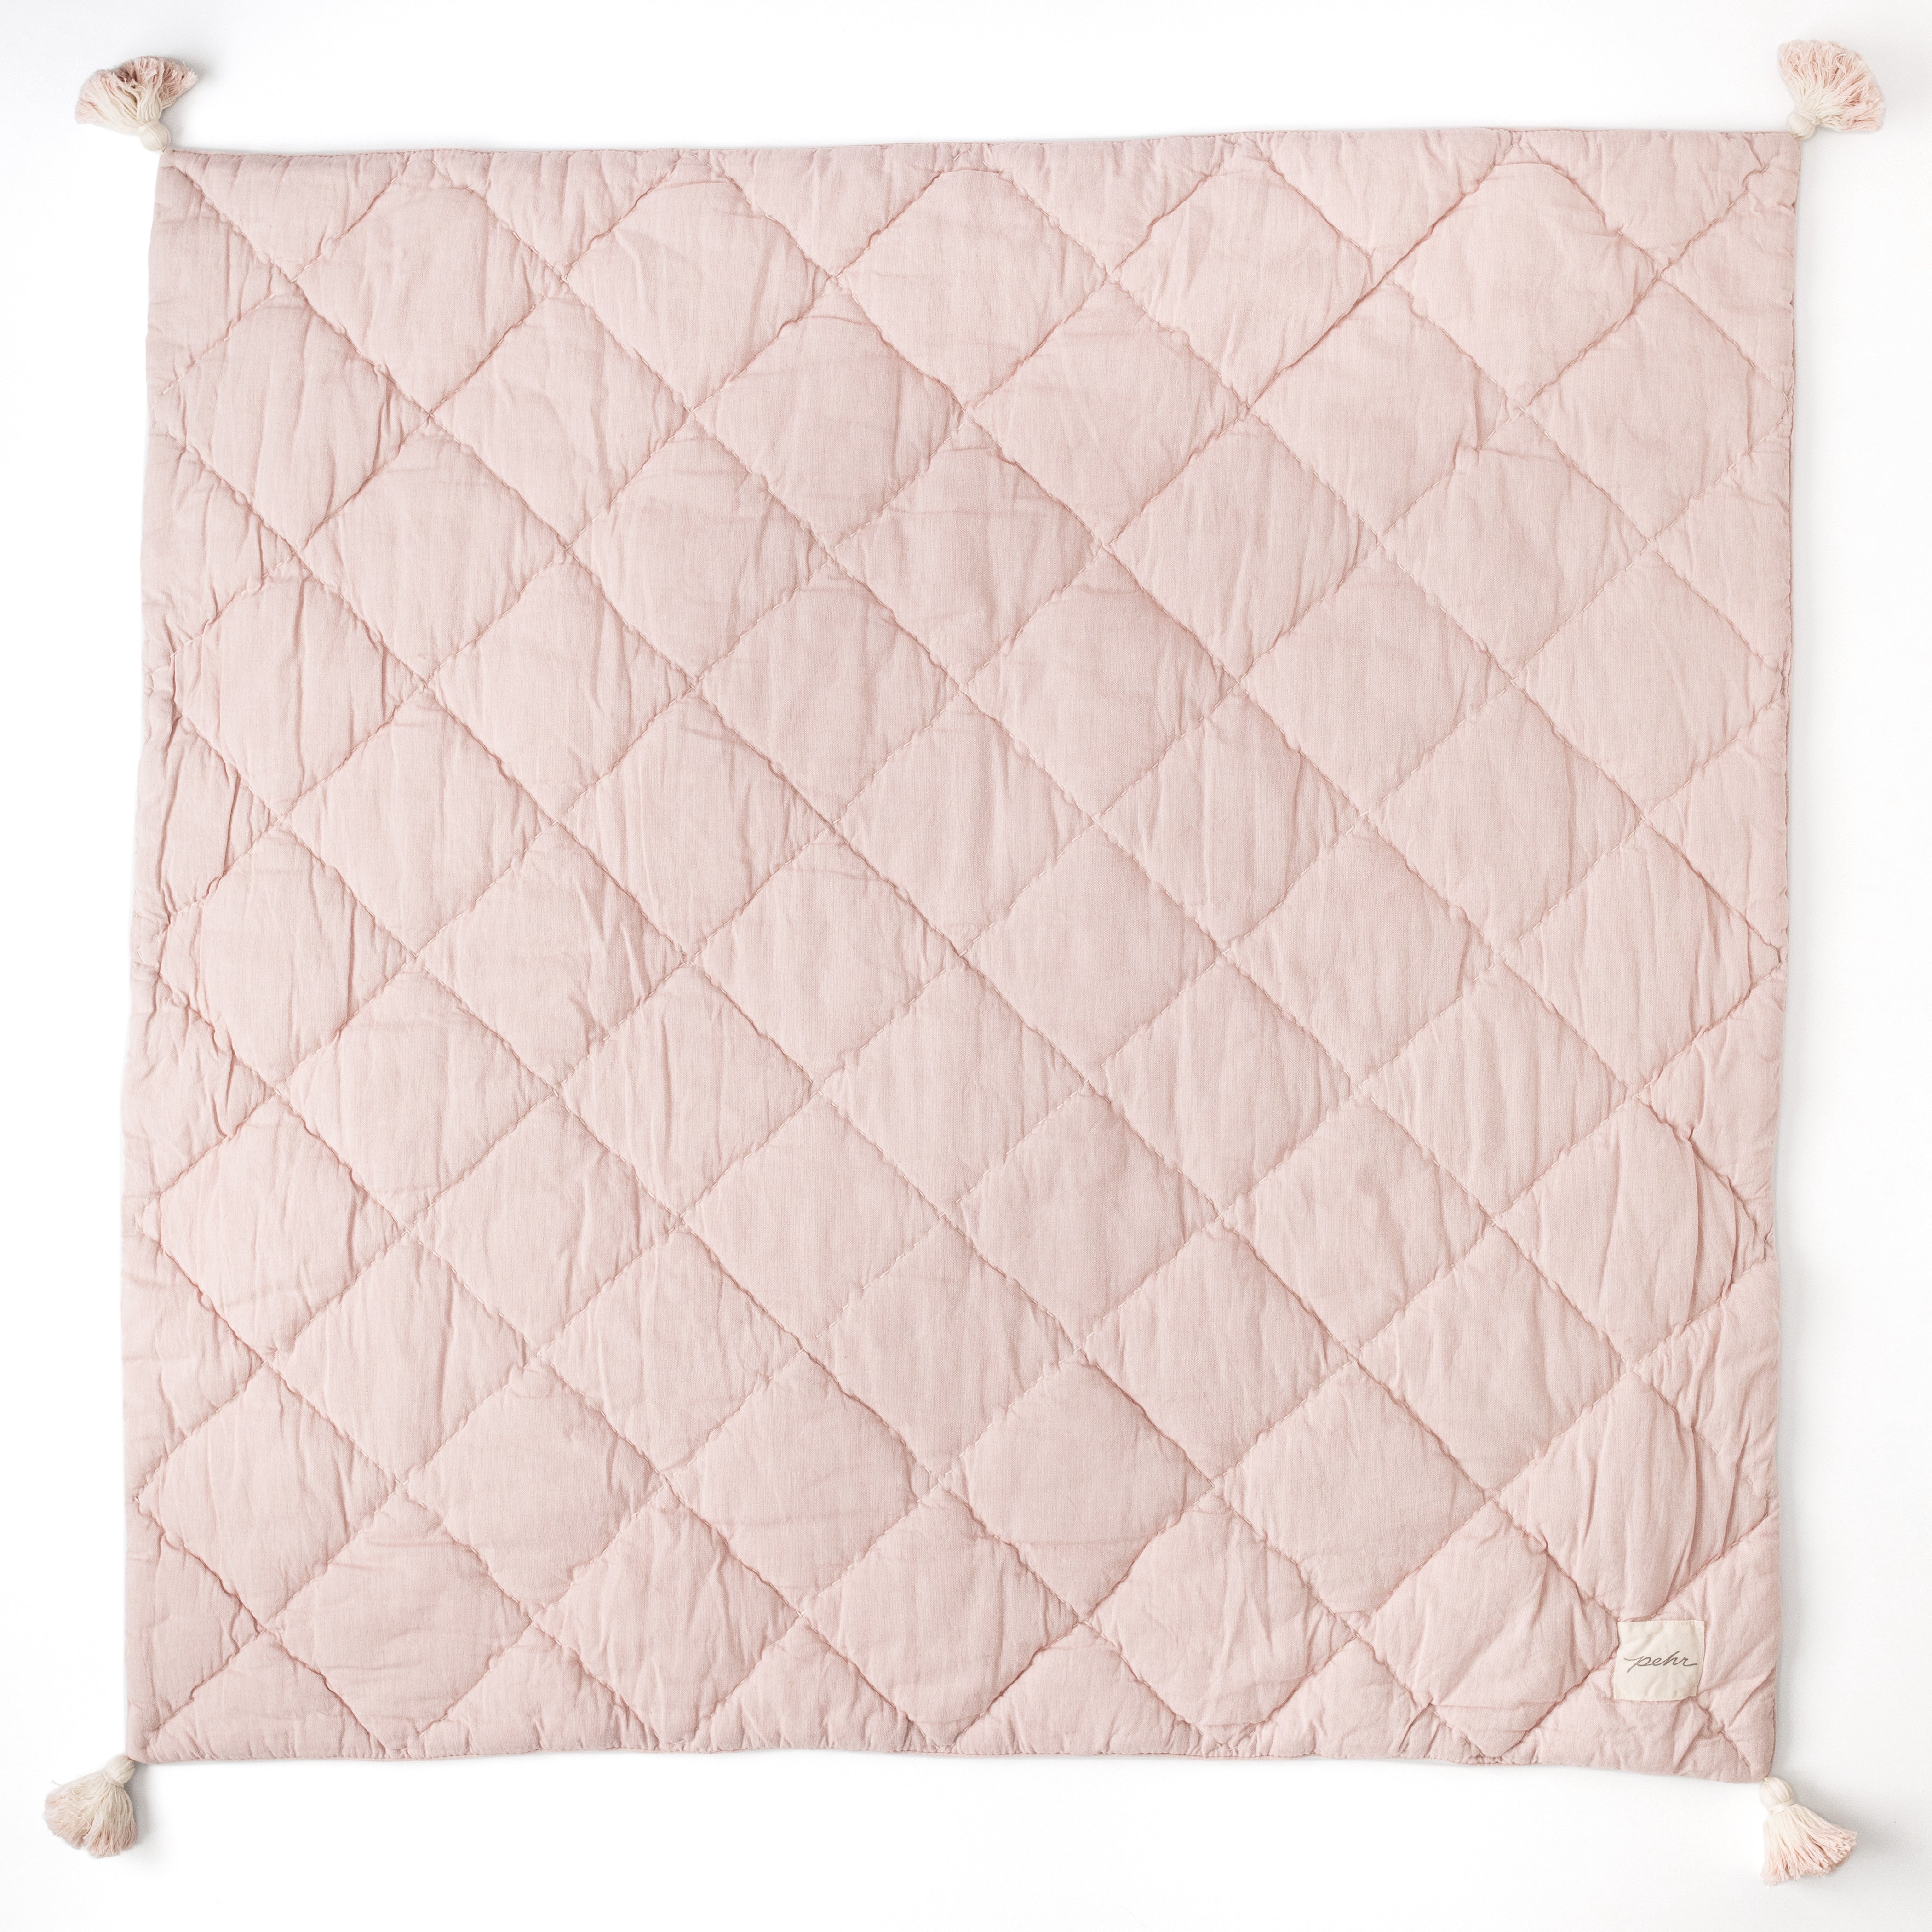 newborn blanket in rose pink color